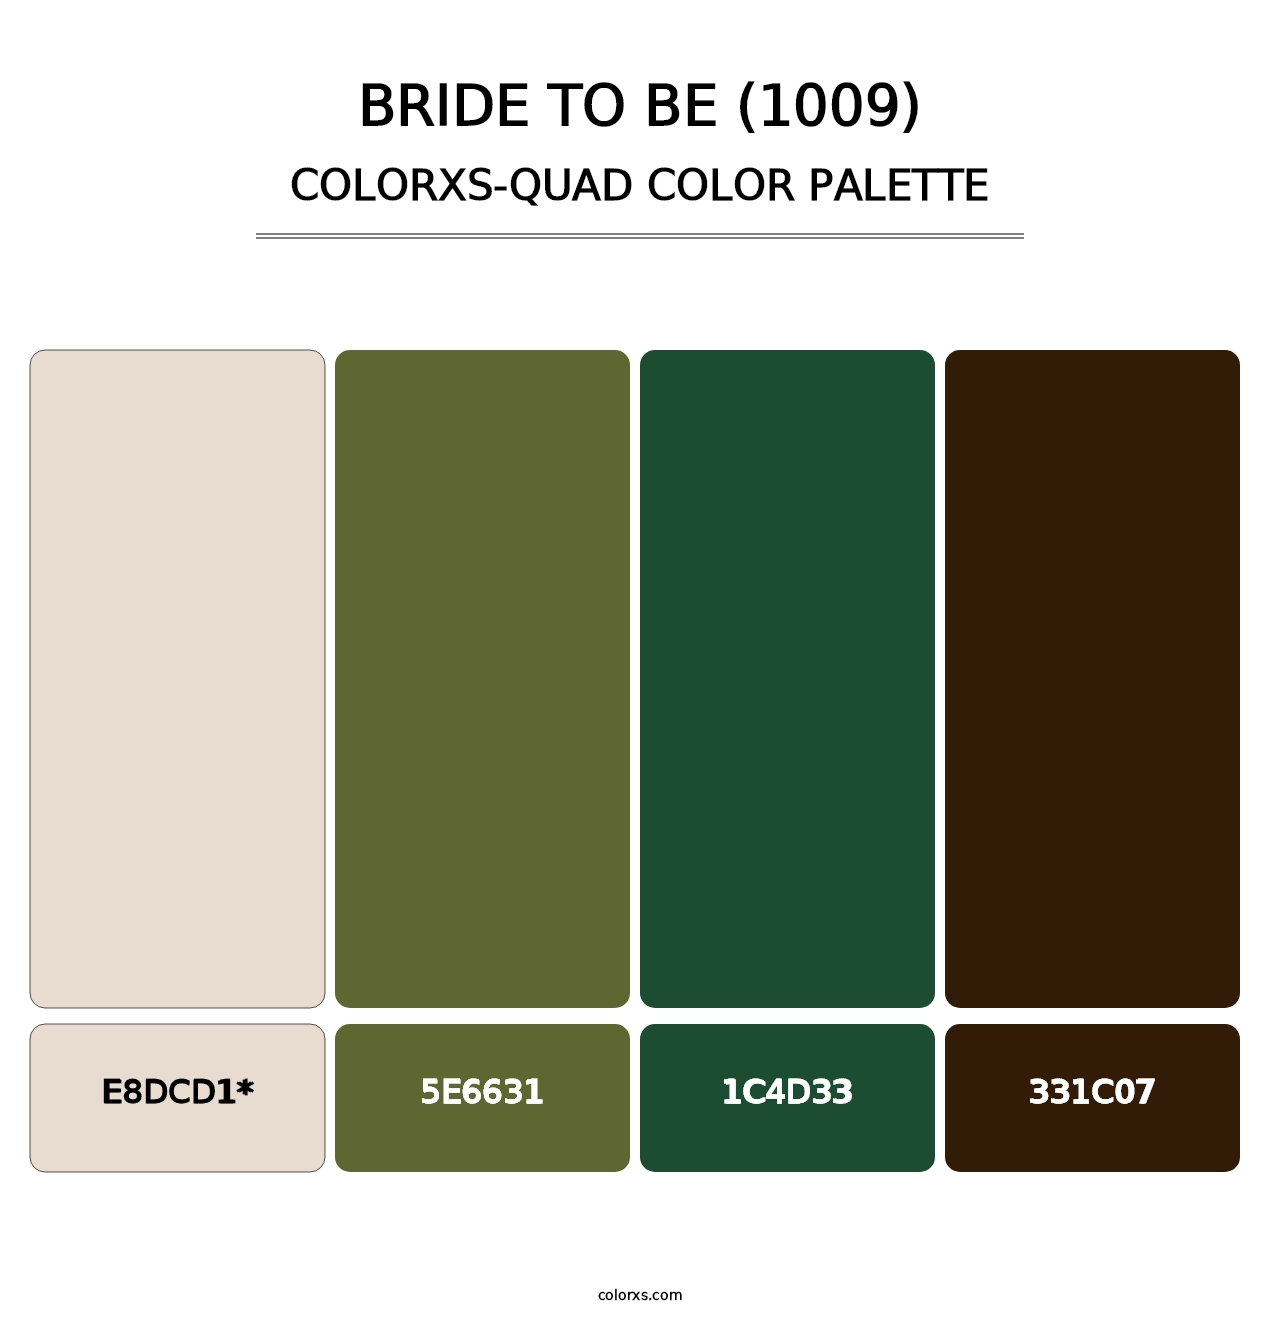 Bride To Be (1009) - Colorxs Quad Palette